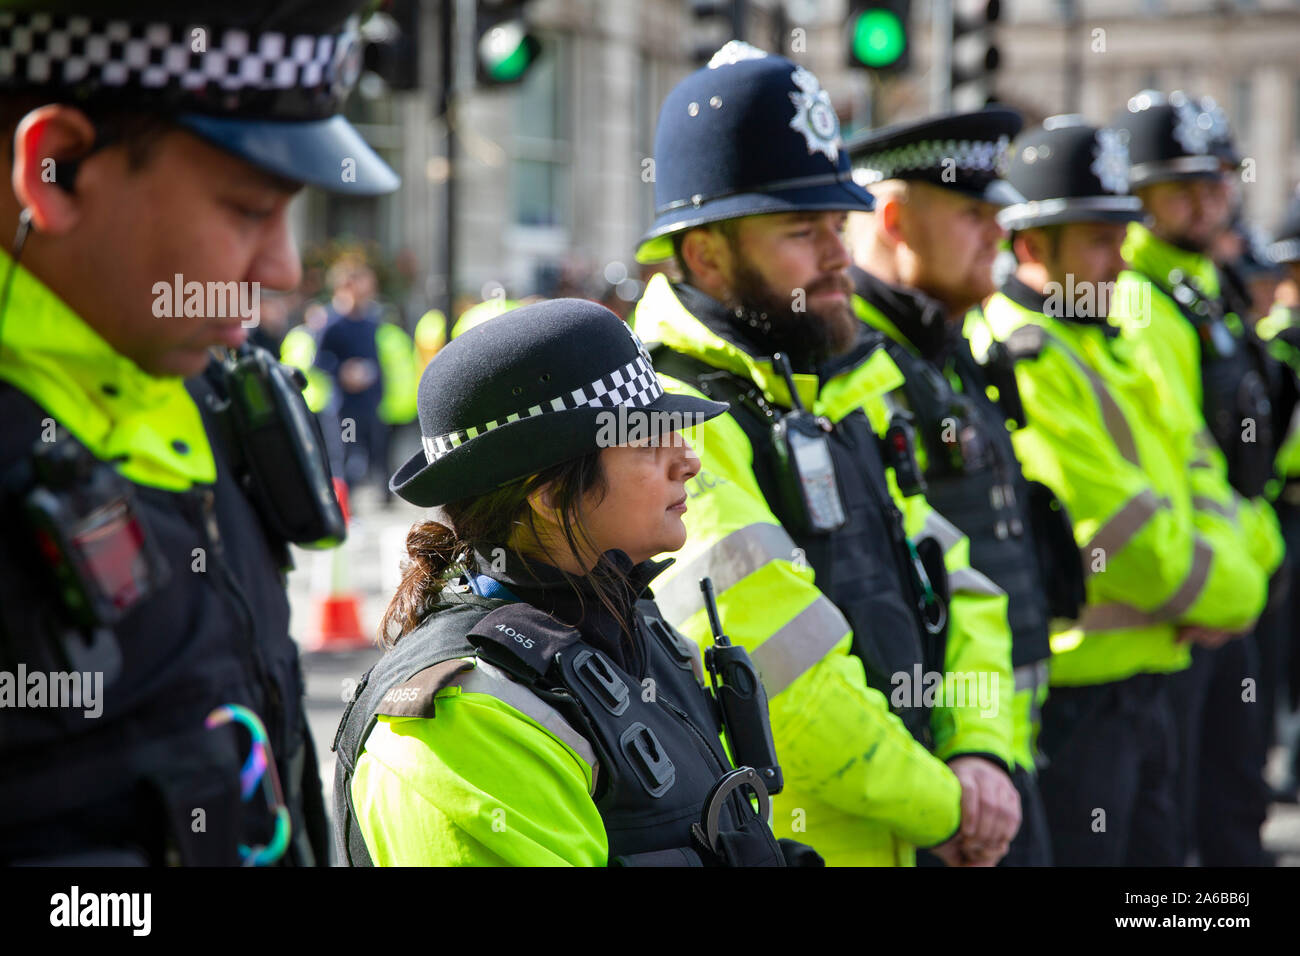 Londres, 10 octobre 2019, la Police de bloquer l'accès à Whiehall au cours de l'extinction de la démonstration de la rébellion et de l'occupation de Trafalgar Square. Banque D'Images